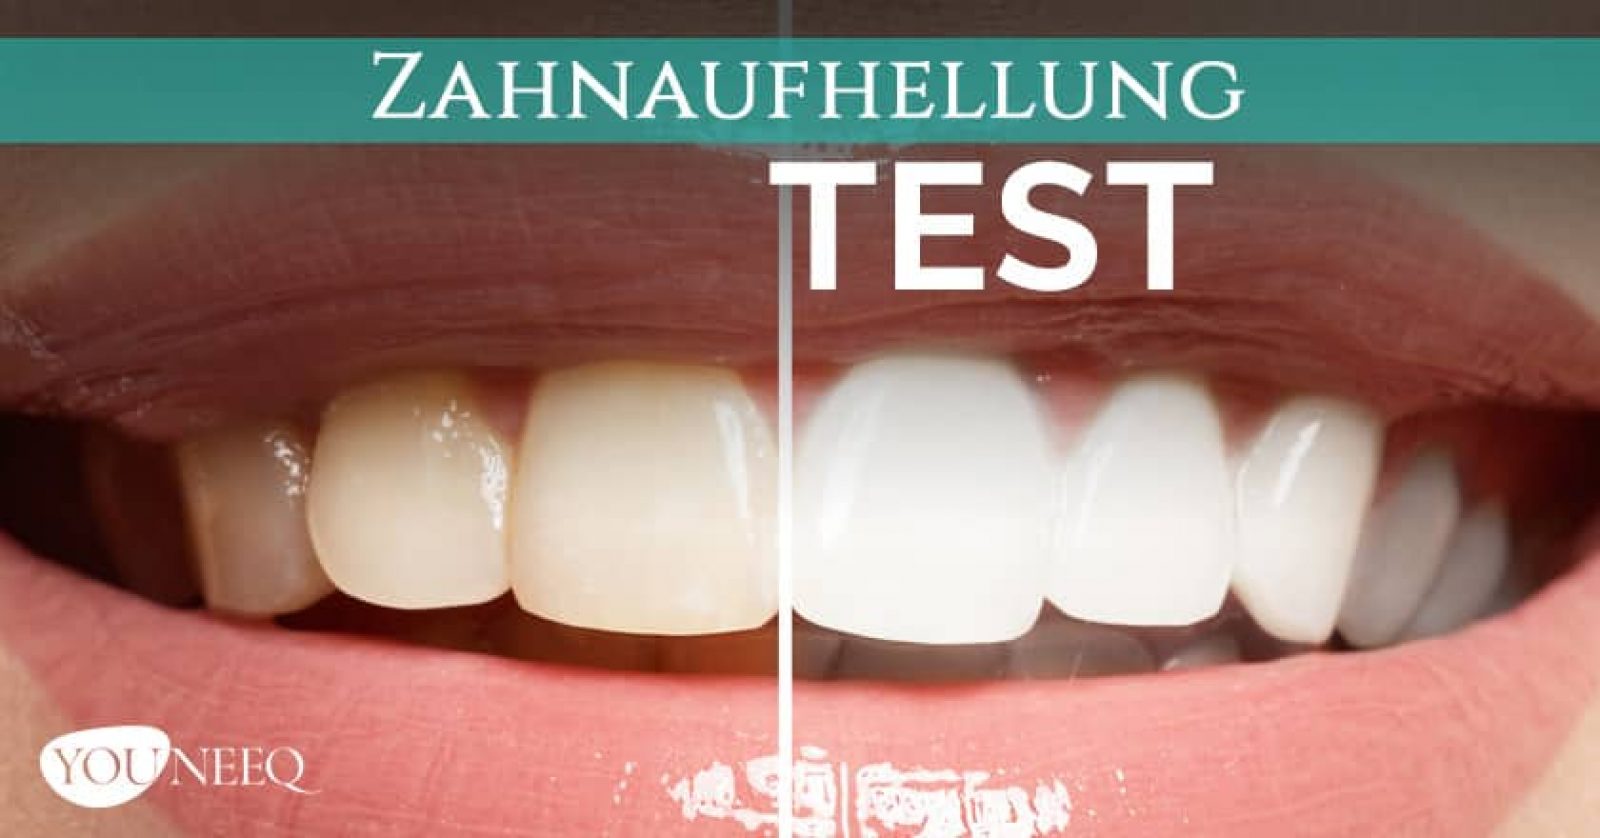 Zähne aufhellen Test